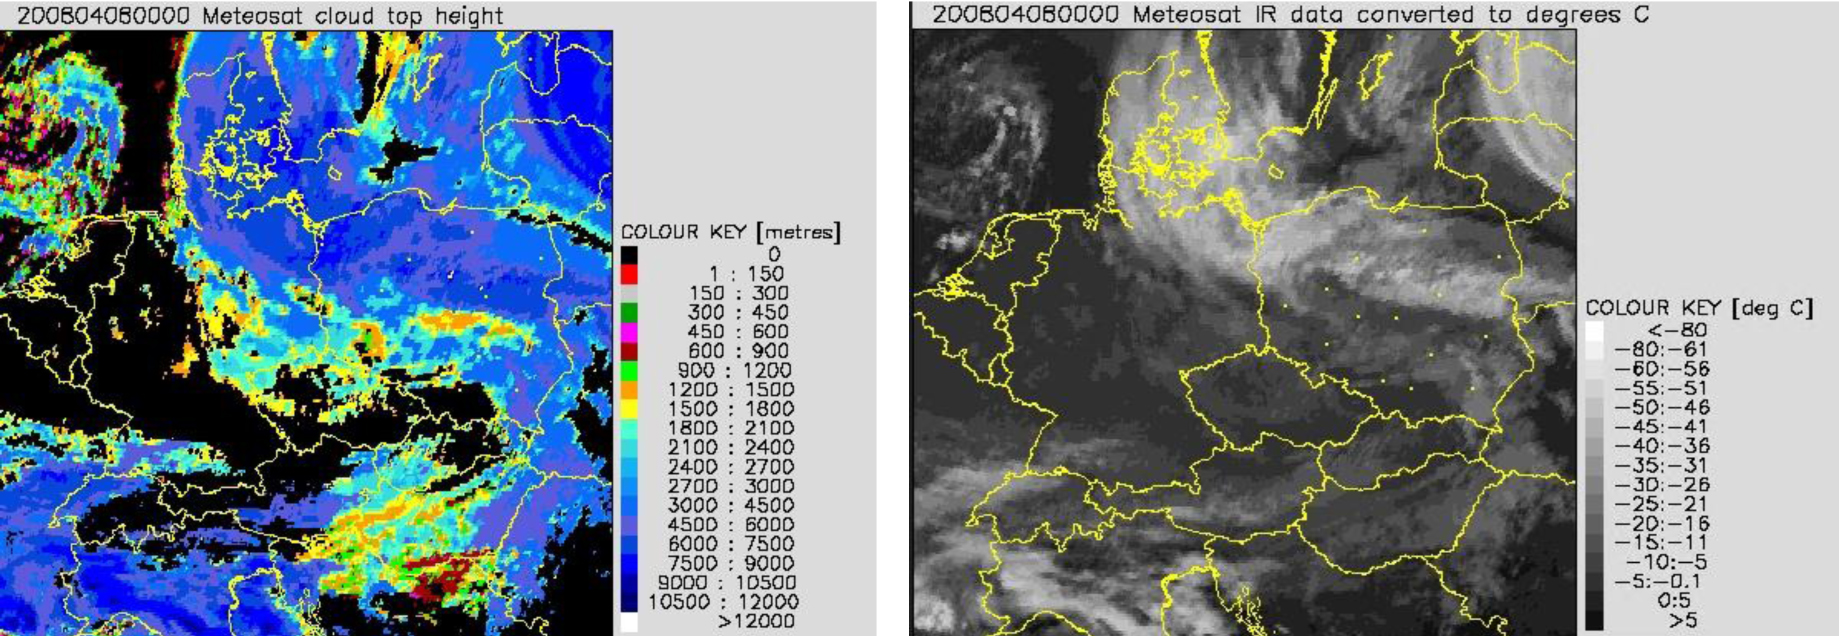 Po lewej: zdjęcie satelitarne METEOSAT cloud top height. 08.04.2008 r., godz. 00.00 UTC. Po prawej: zdjęcie satelitarne METEOSAT w podczerwieni IR, 08.04.2008 r., godz. 00.00 UTC. Bardzo niska temperatura wierzchołków chmur, dochodząca do –60ºC, świadczy o rozbudowie chmur w pionie do znacznych wysokości.